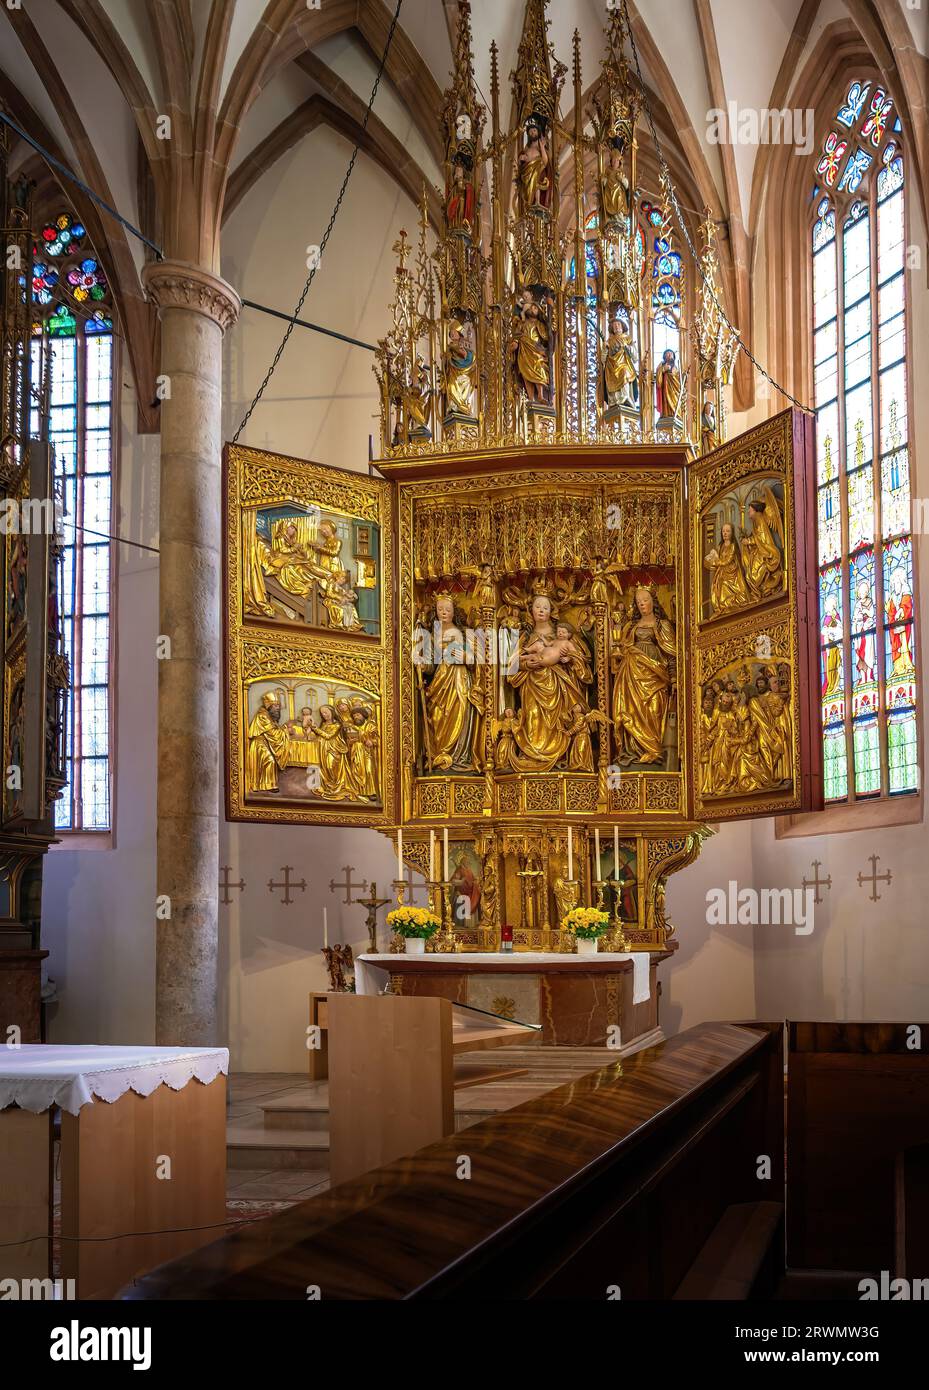 Astl Altar Katholische Kirche Innen - Hallstatt, Österreich Stockfoto